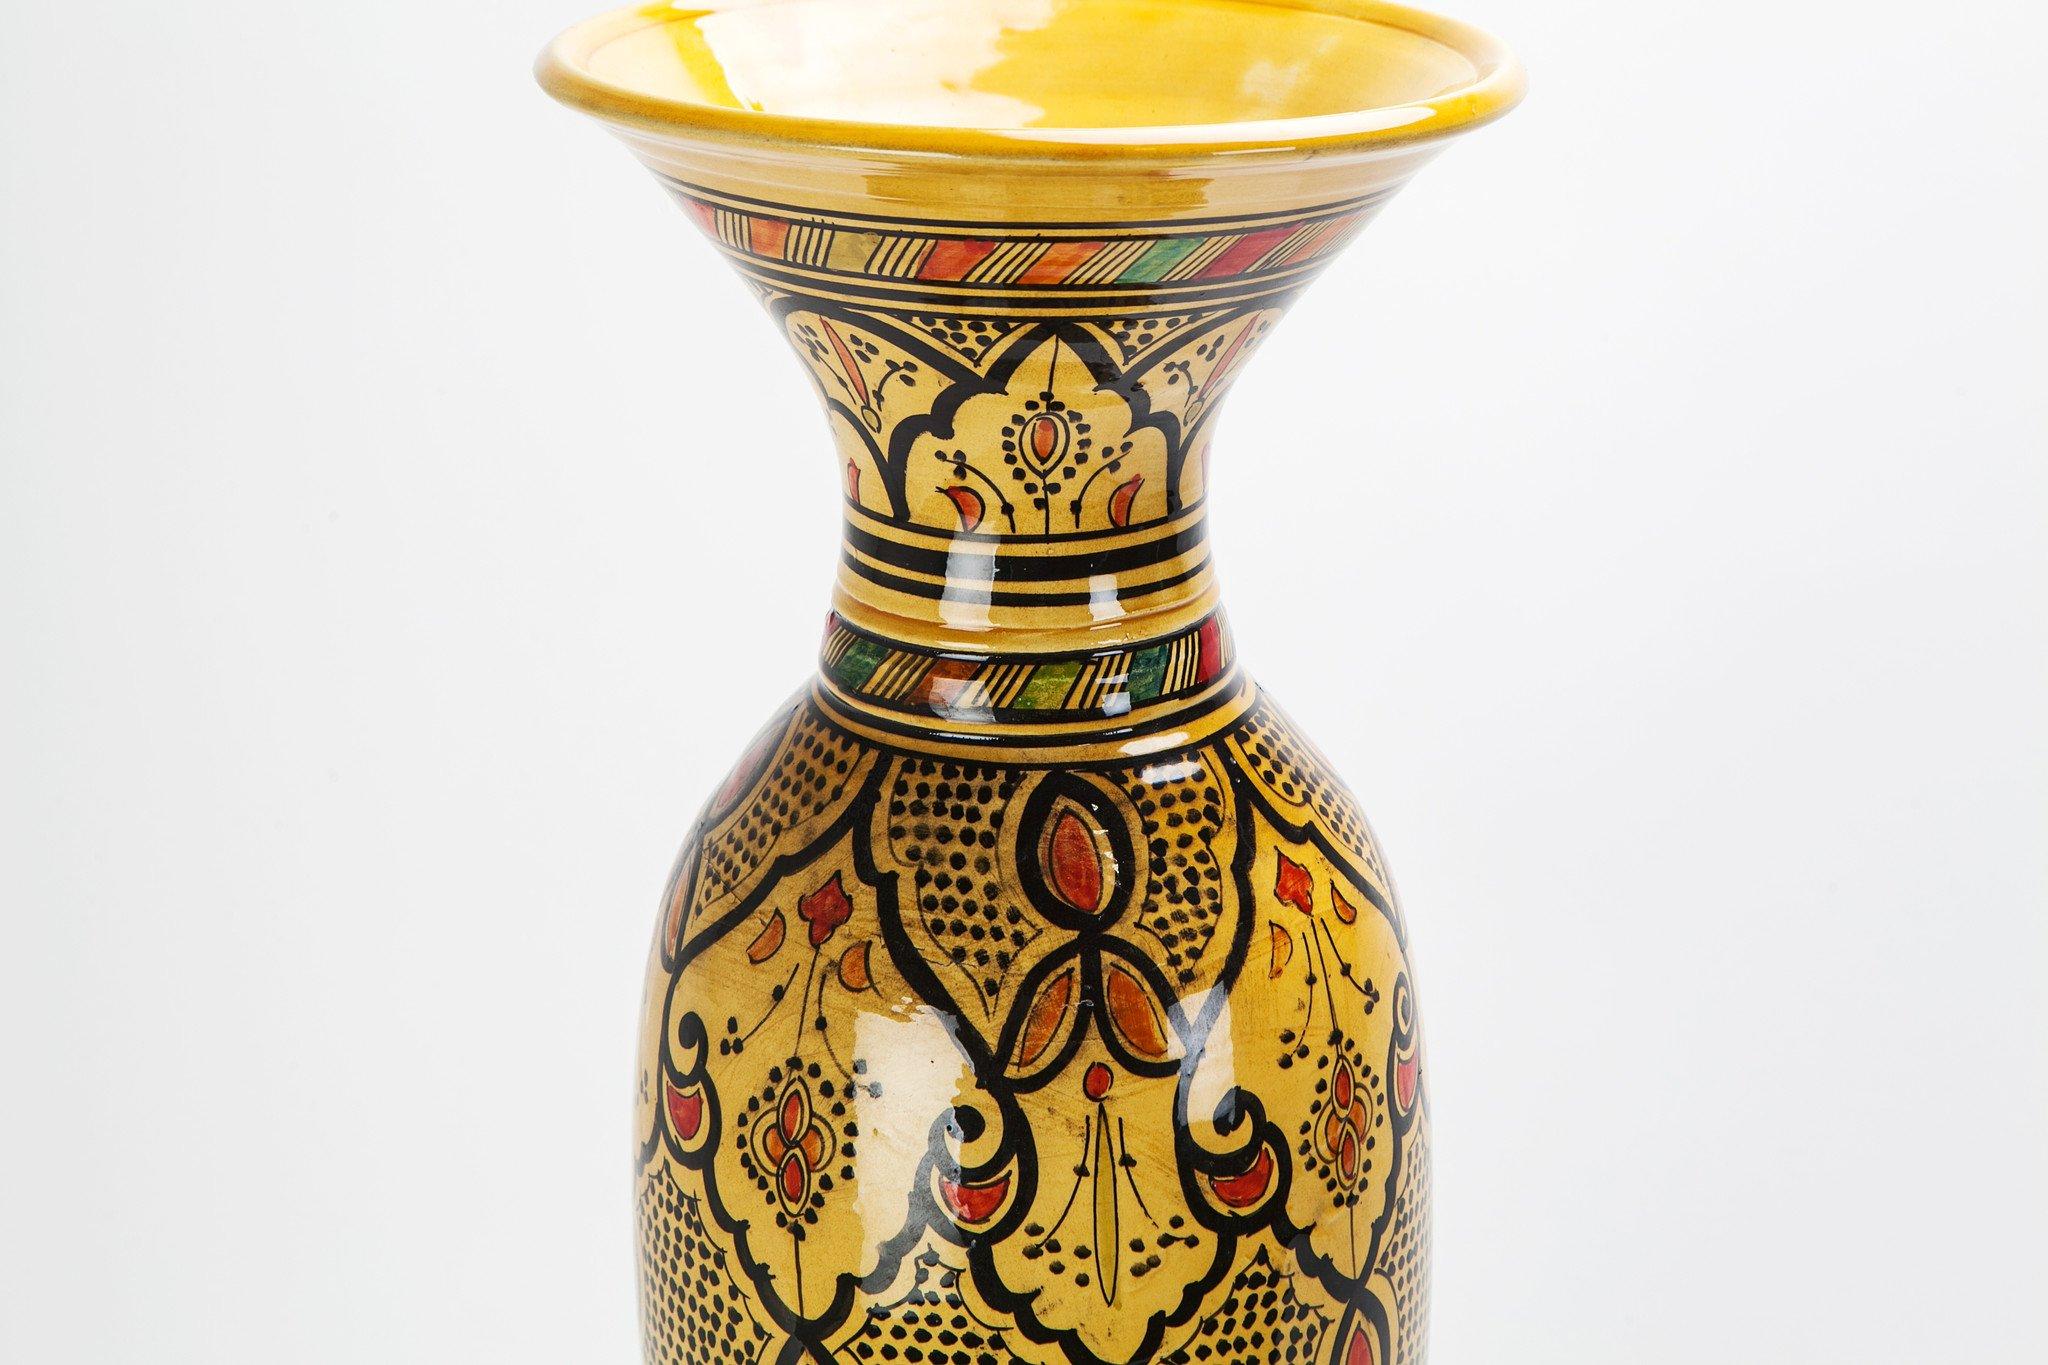 Mit ihrem faszinierenden kegelförmigen Design, den rustikalen Farben Gelb, Orange und Schwarz und einem kunstvollen Muster ist diese handgefertigte Vintage-Vase die ideale Ergänzung für jeden Raum, der exotische Eleganz braucht. Die Vase wurde in